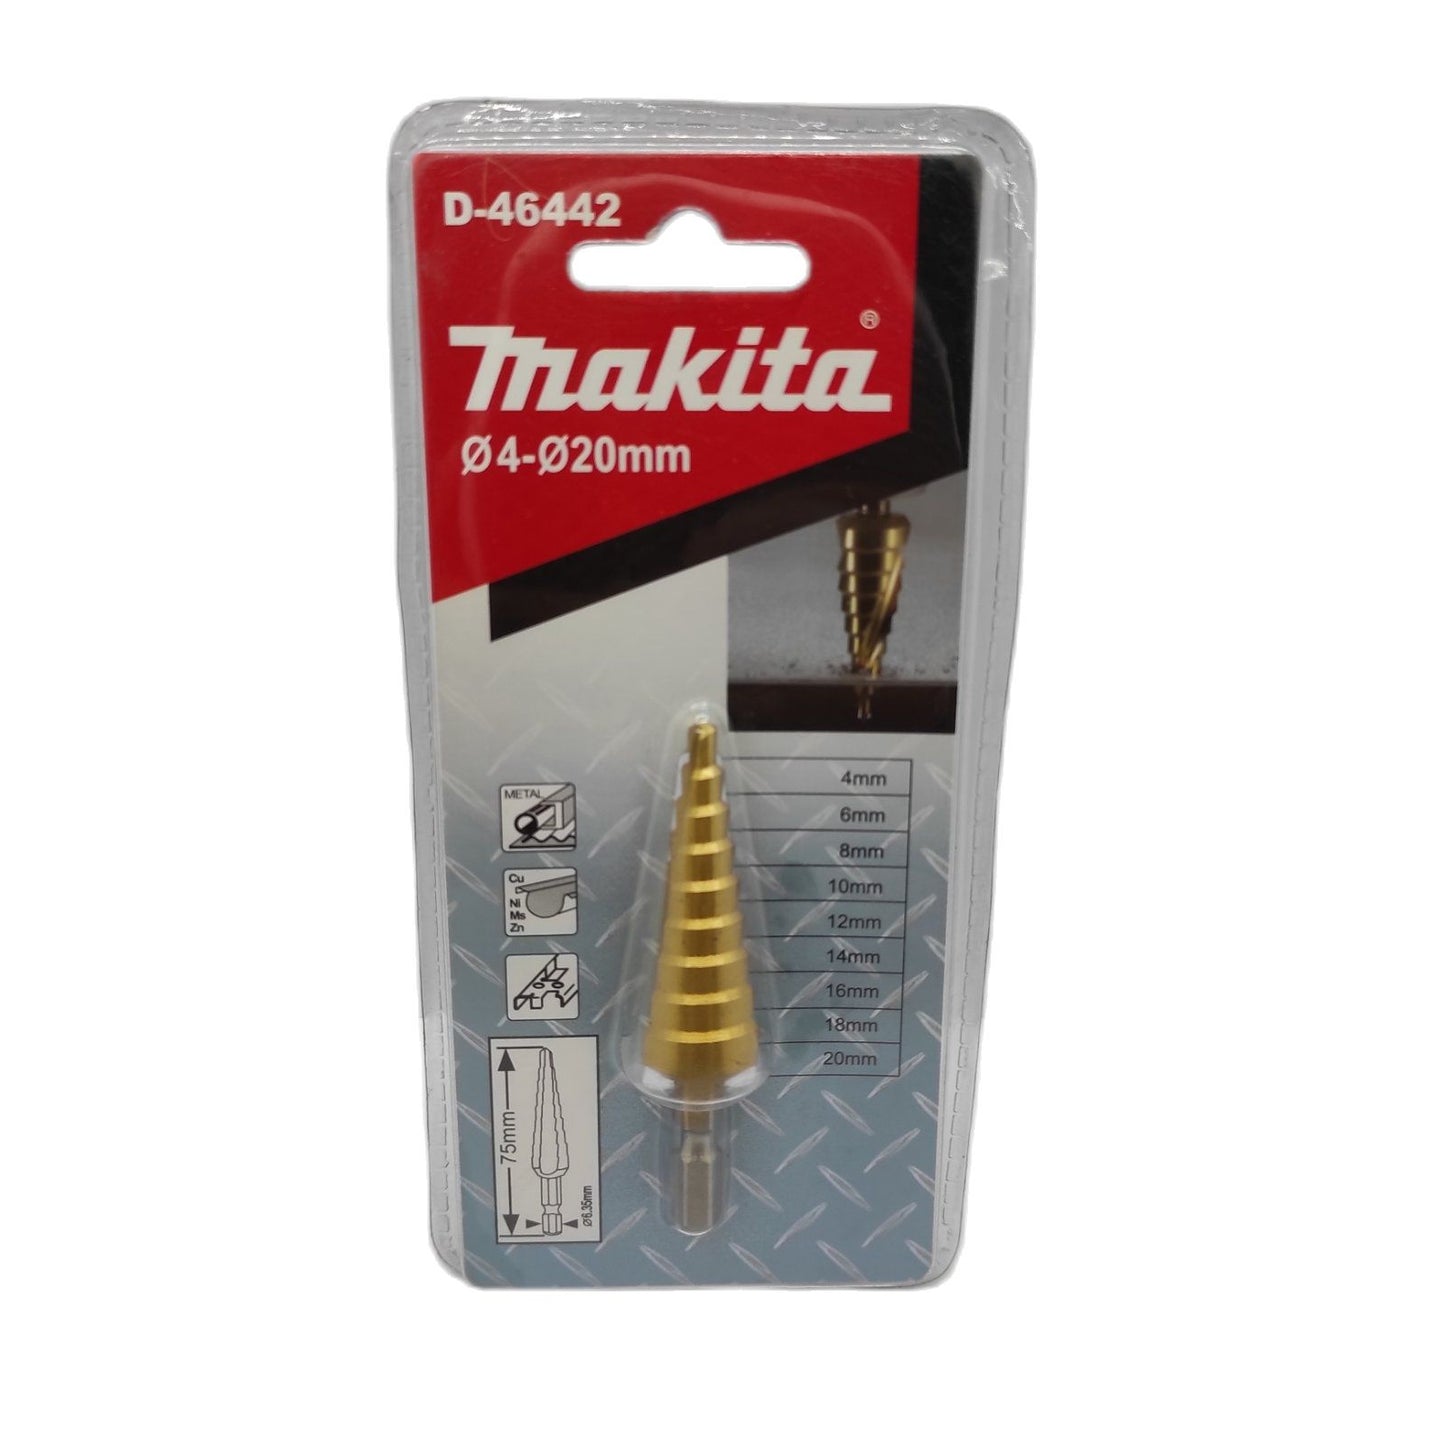 MAKITA D-46442 Step Drill Bit Straight Flute TiN Coating 4-20mm